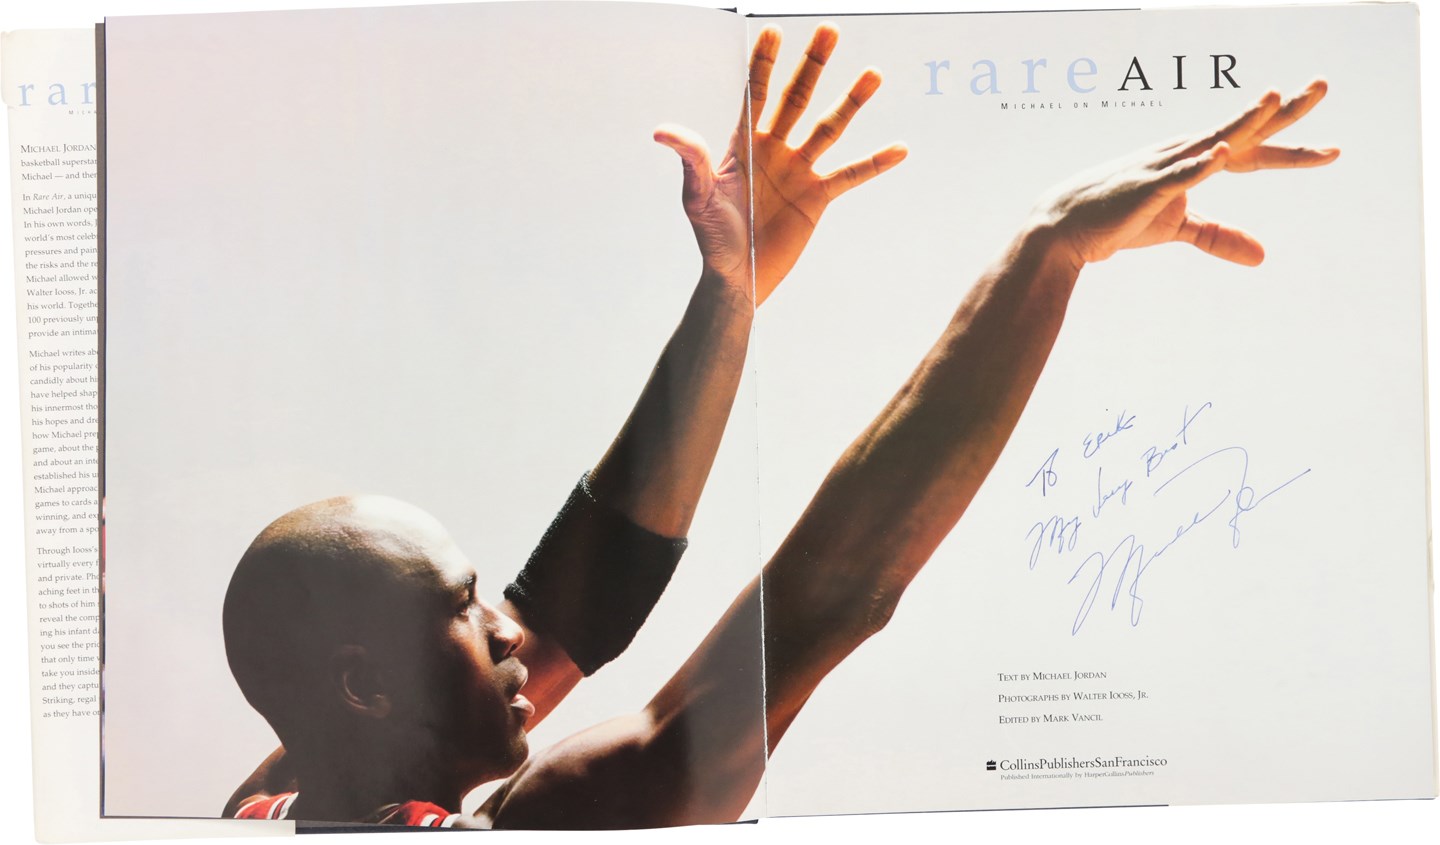 - Michael Jordan Signed "Rare Air" Hardcover Book (PSA)